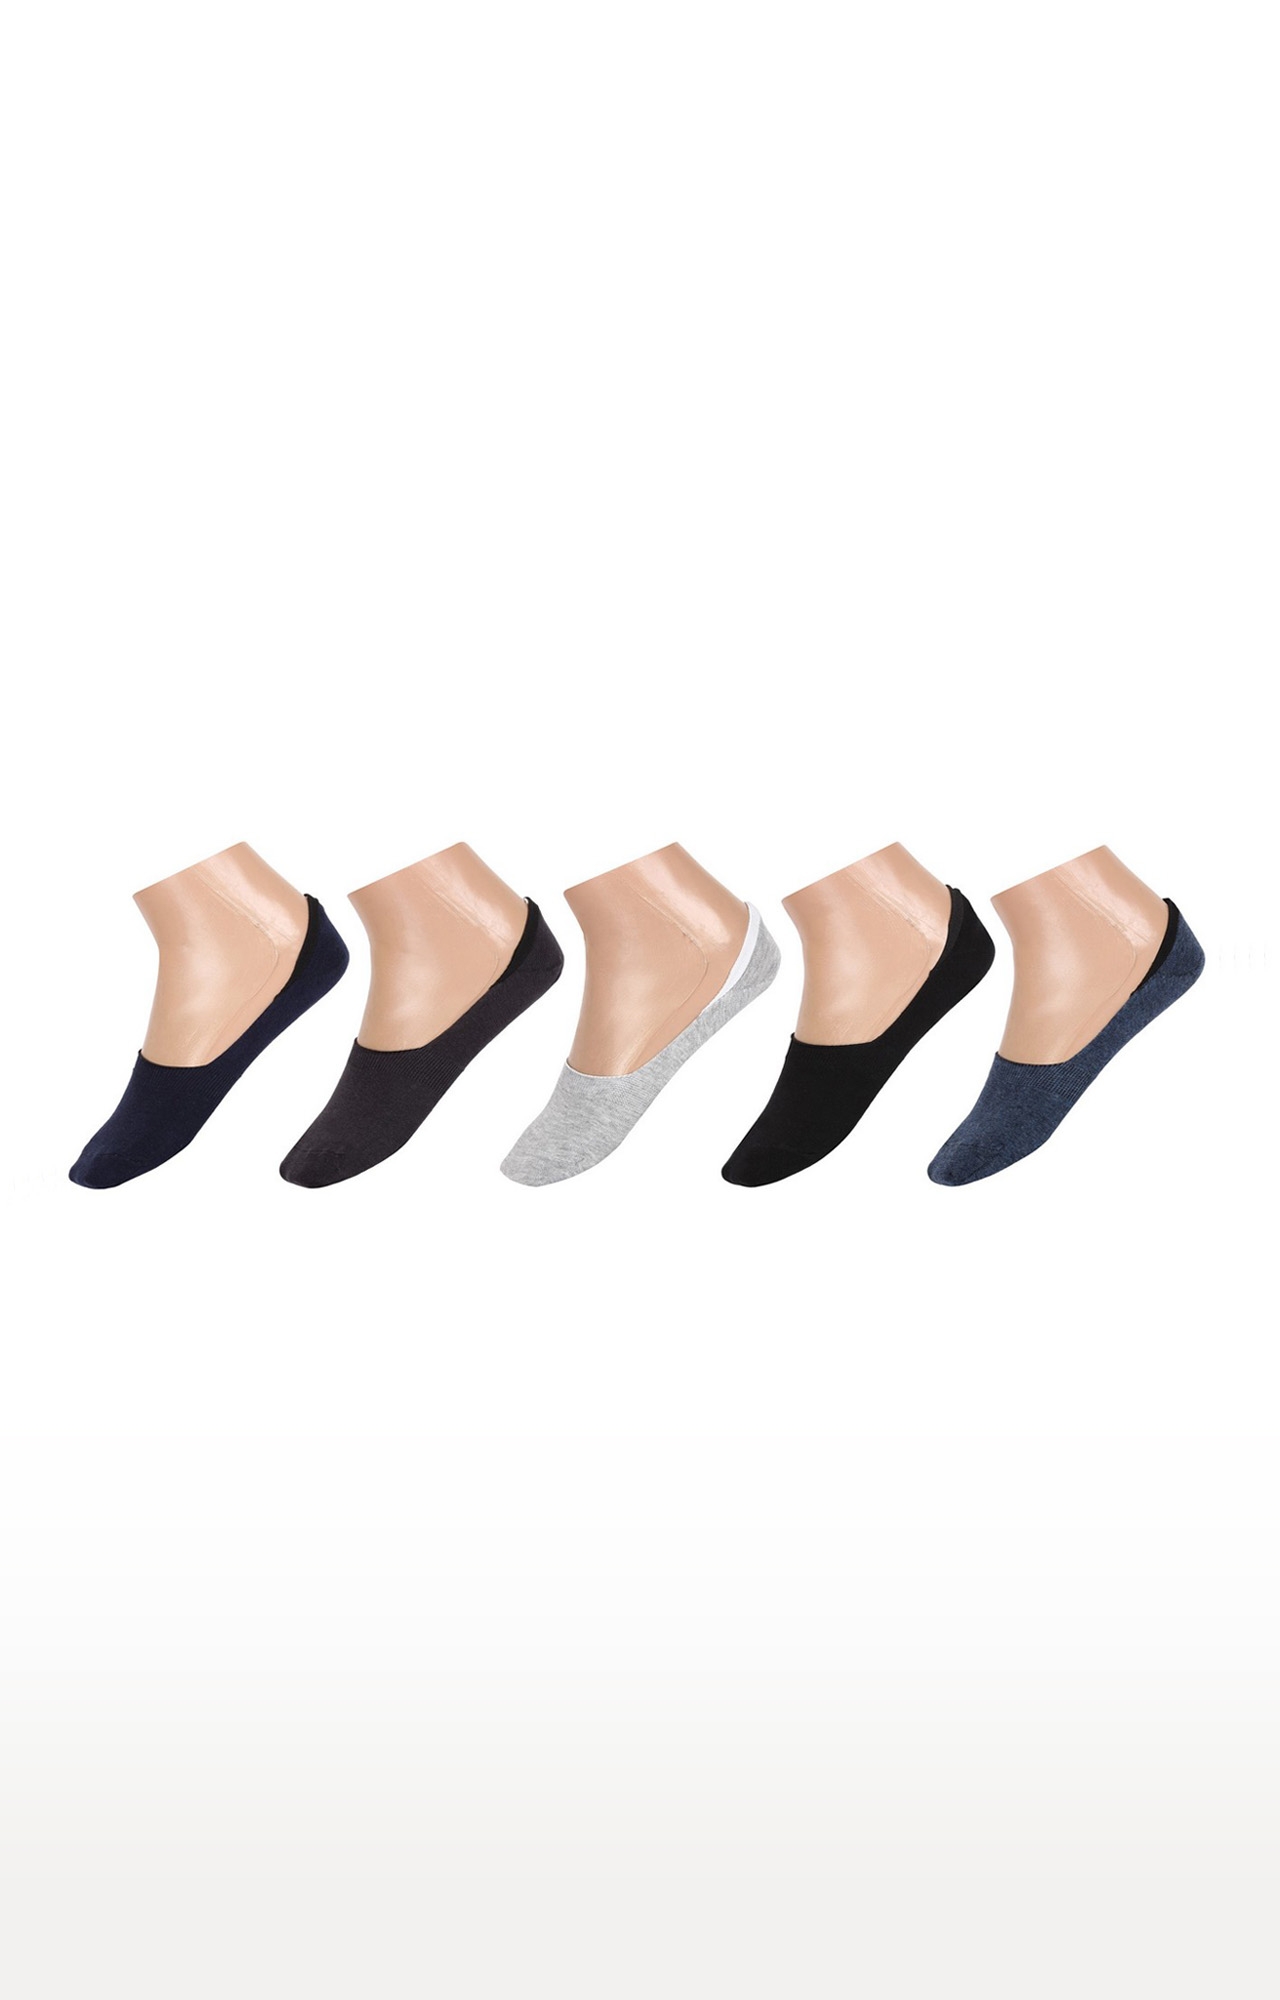 SIDEWOK | SIDEWOK Men Cotton Multicolour Socks - Pack of 5 0